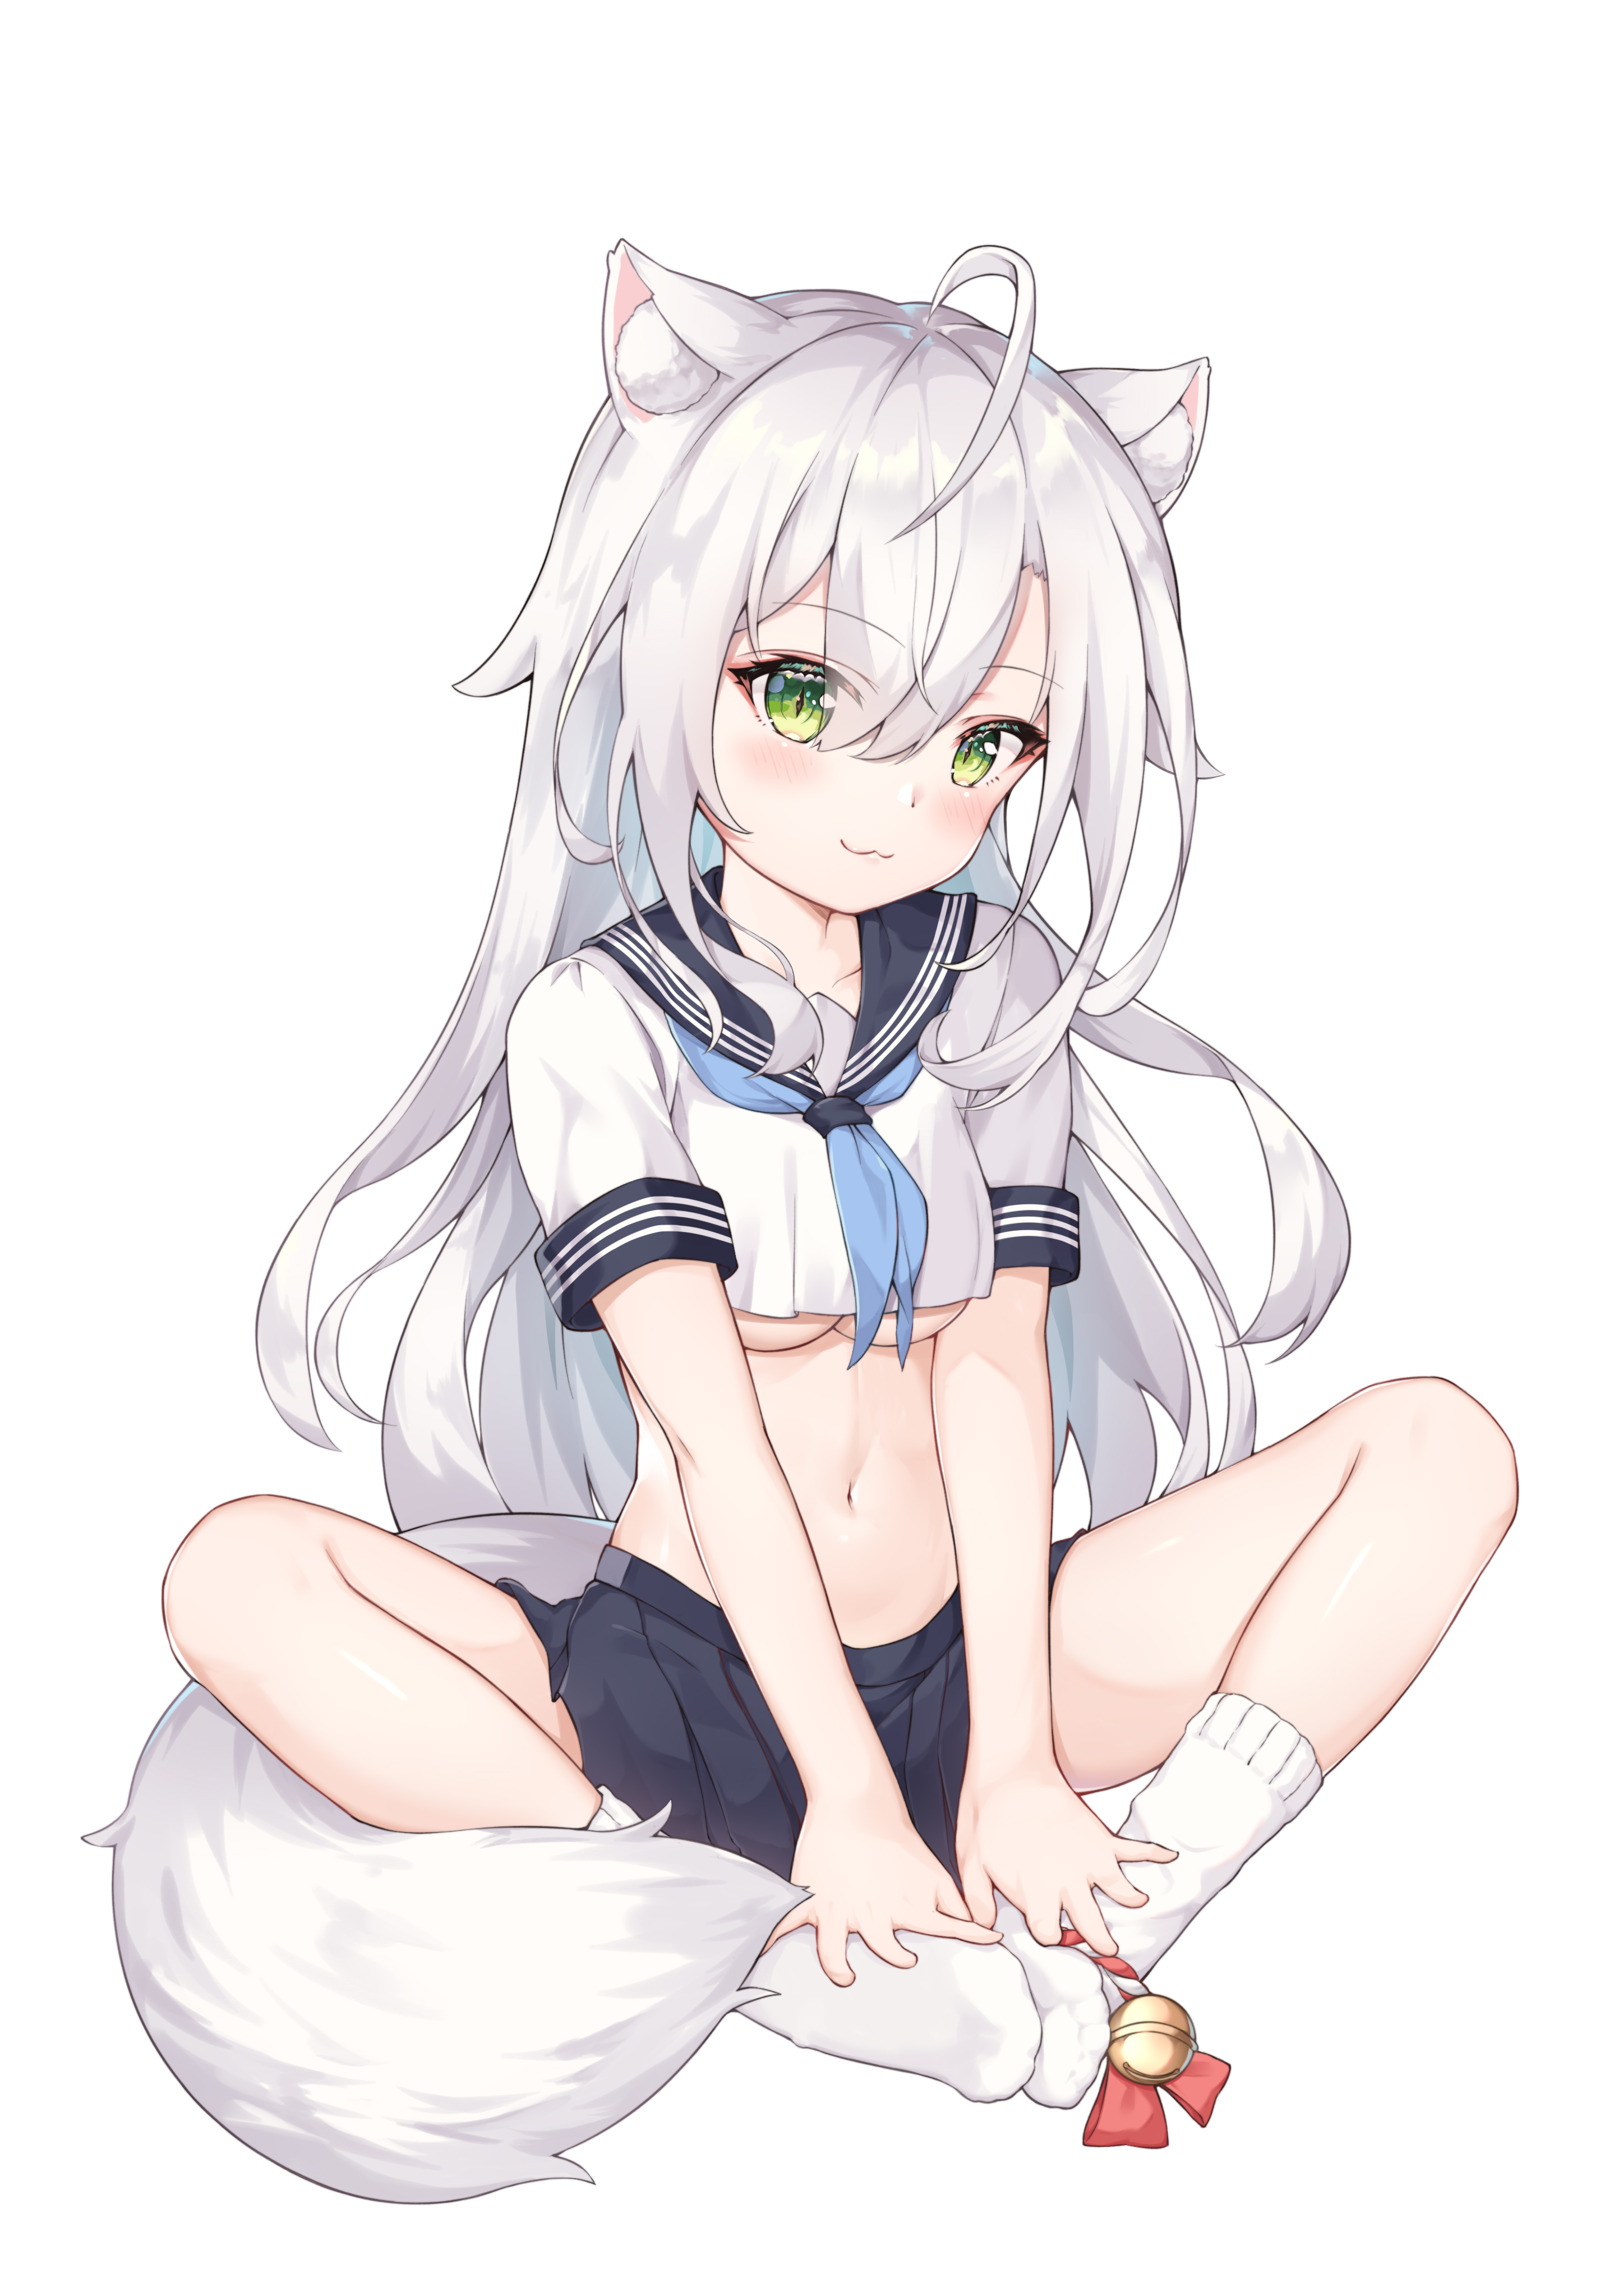 Anime 2894x4093 kuroida anime girls cat girl animal ears underboob school uniform tail white hair skirt socks green eyes